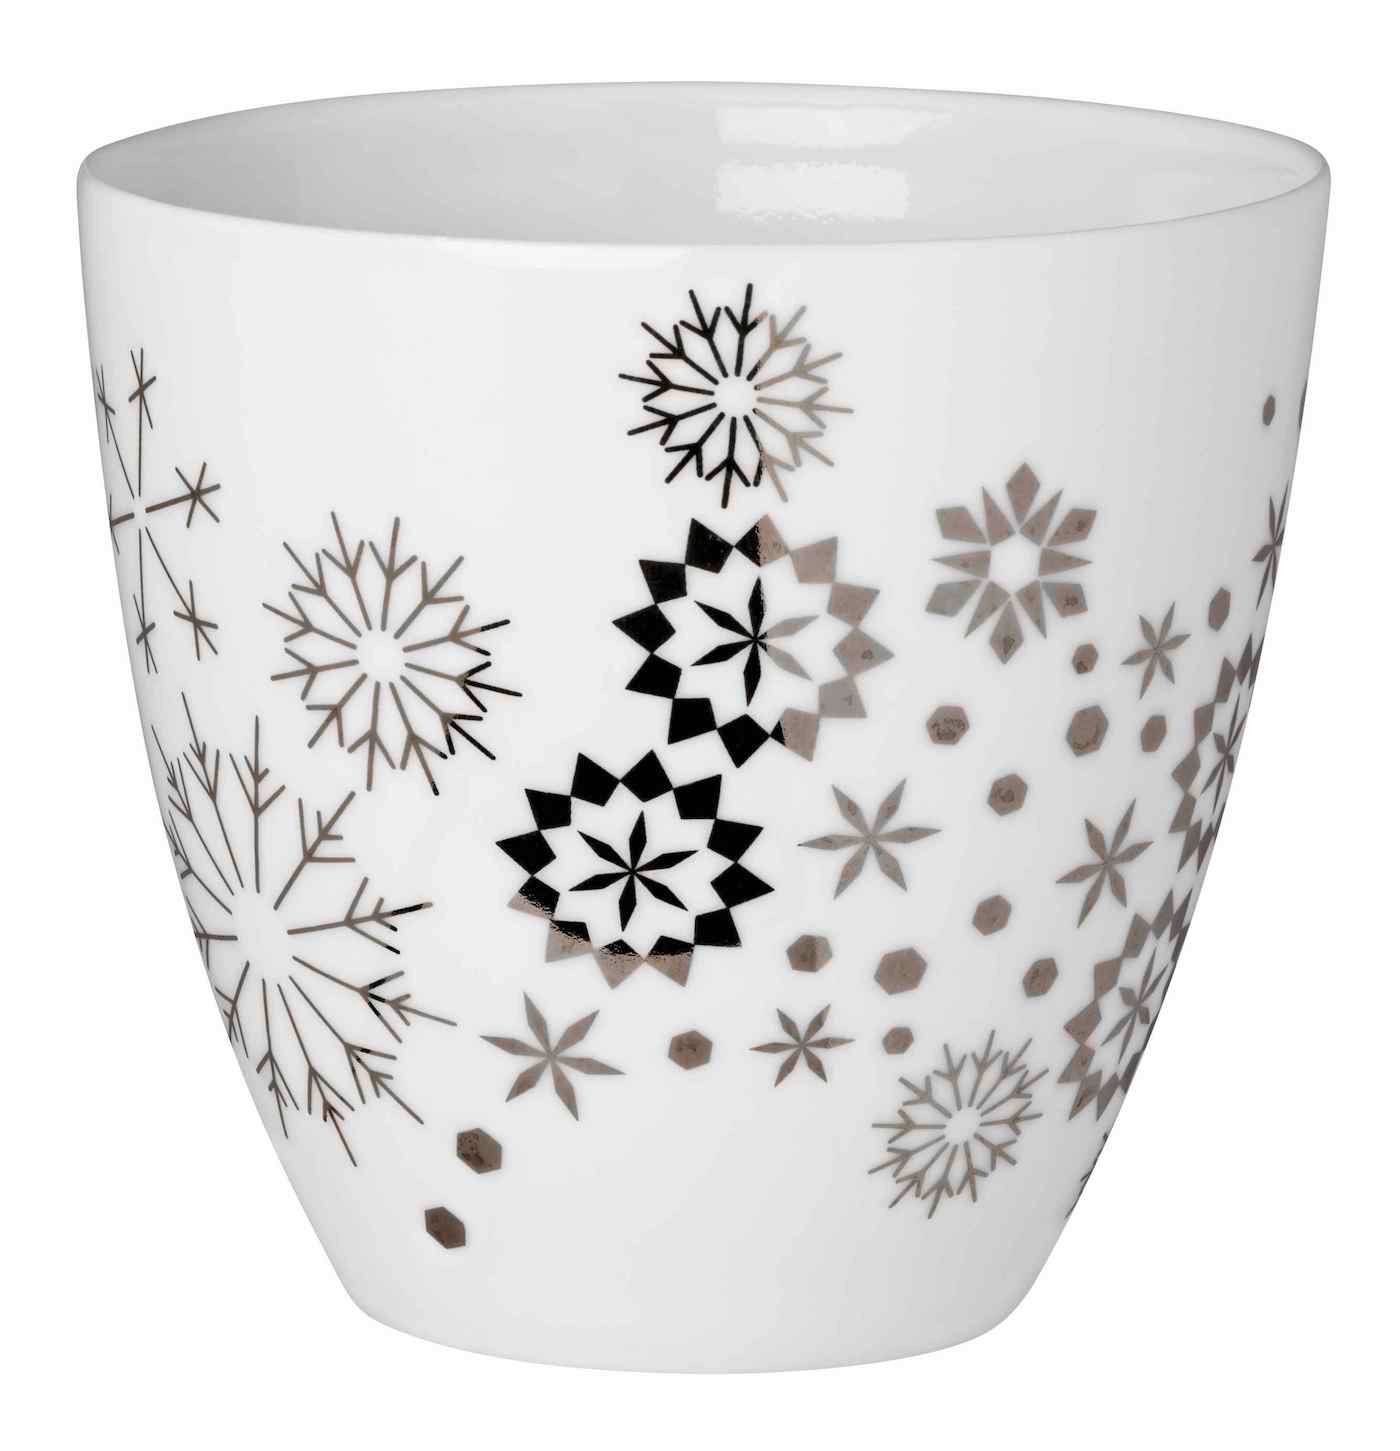 Schneeflocken Räder Porzellan H9cm Design Teelichthalter weiß silber Silber Porzellanlicht